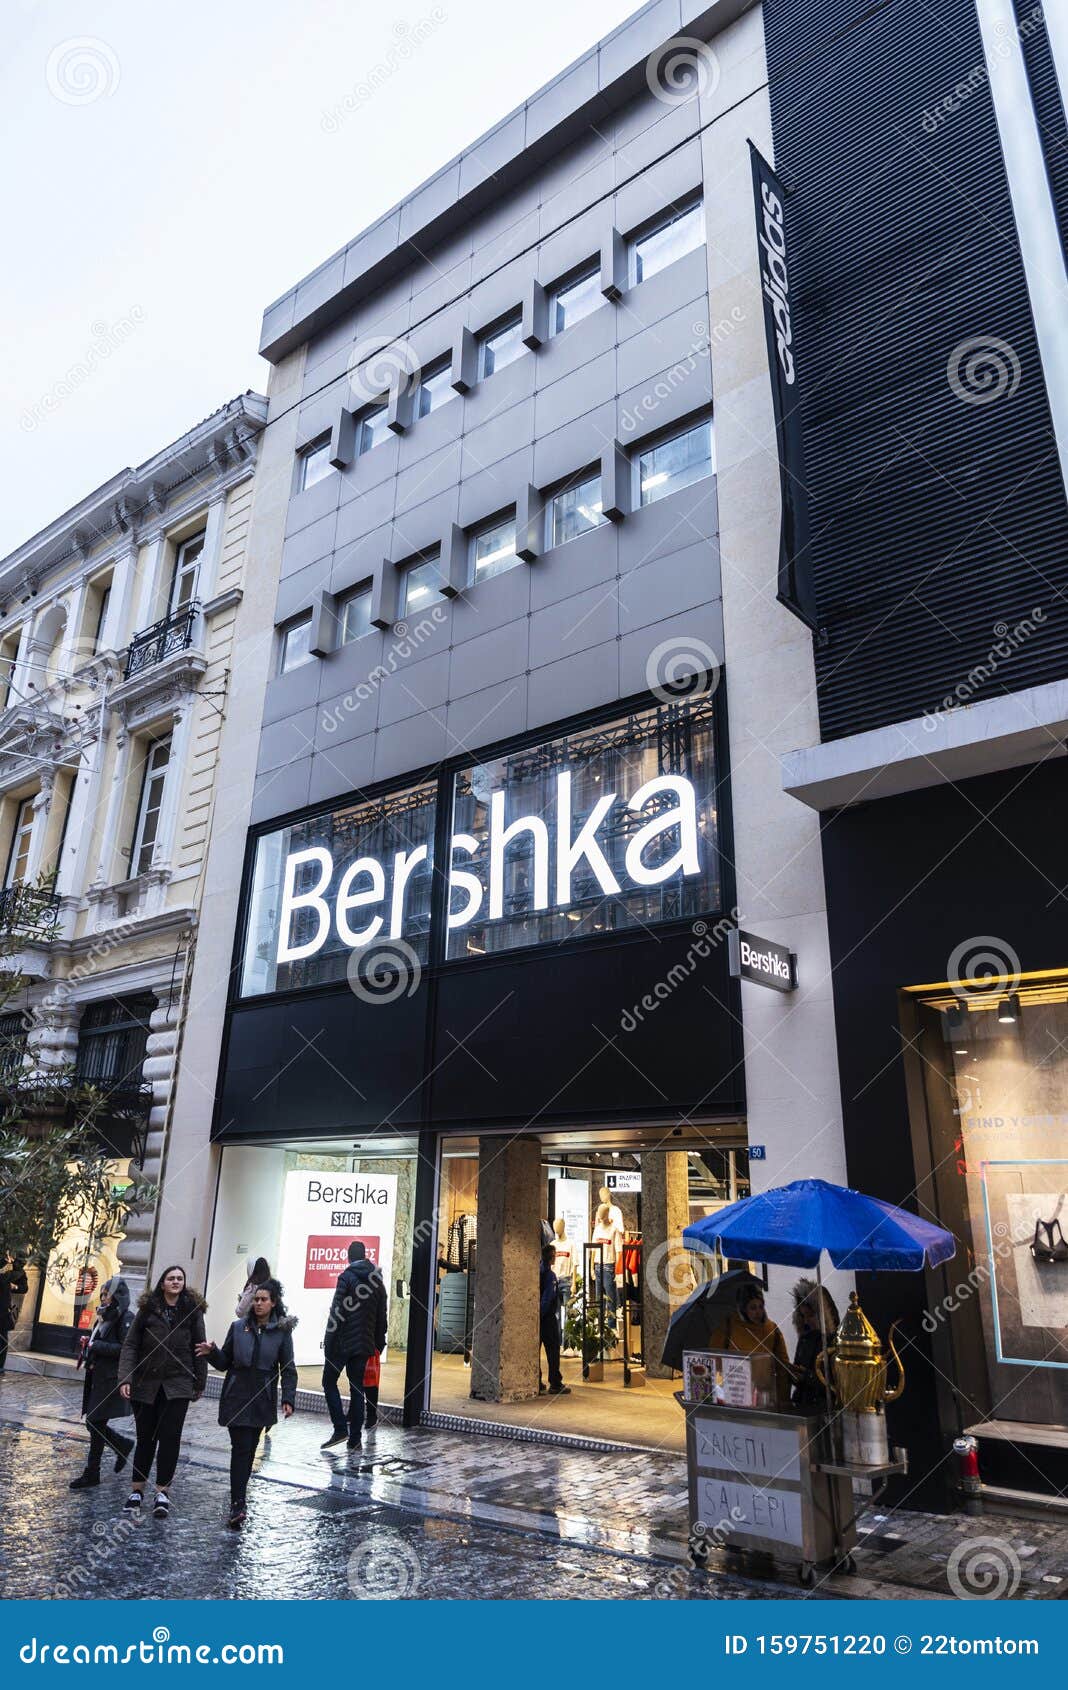 geboren Bediening mogelijk Normaal gesproken Bershka Store at Night in Athens, Greece Editorial Image - Image of design,  retail: 159751220